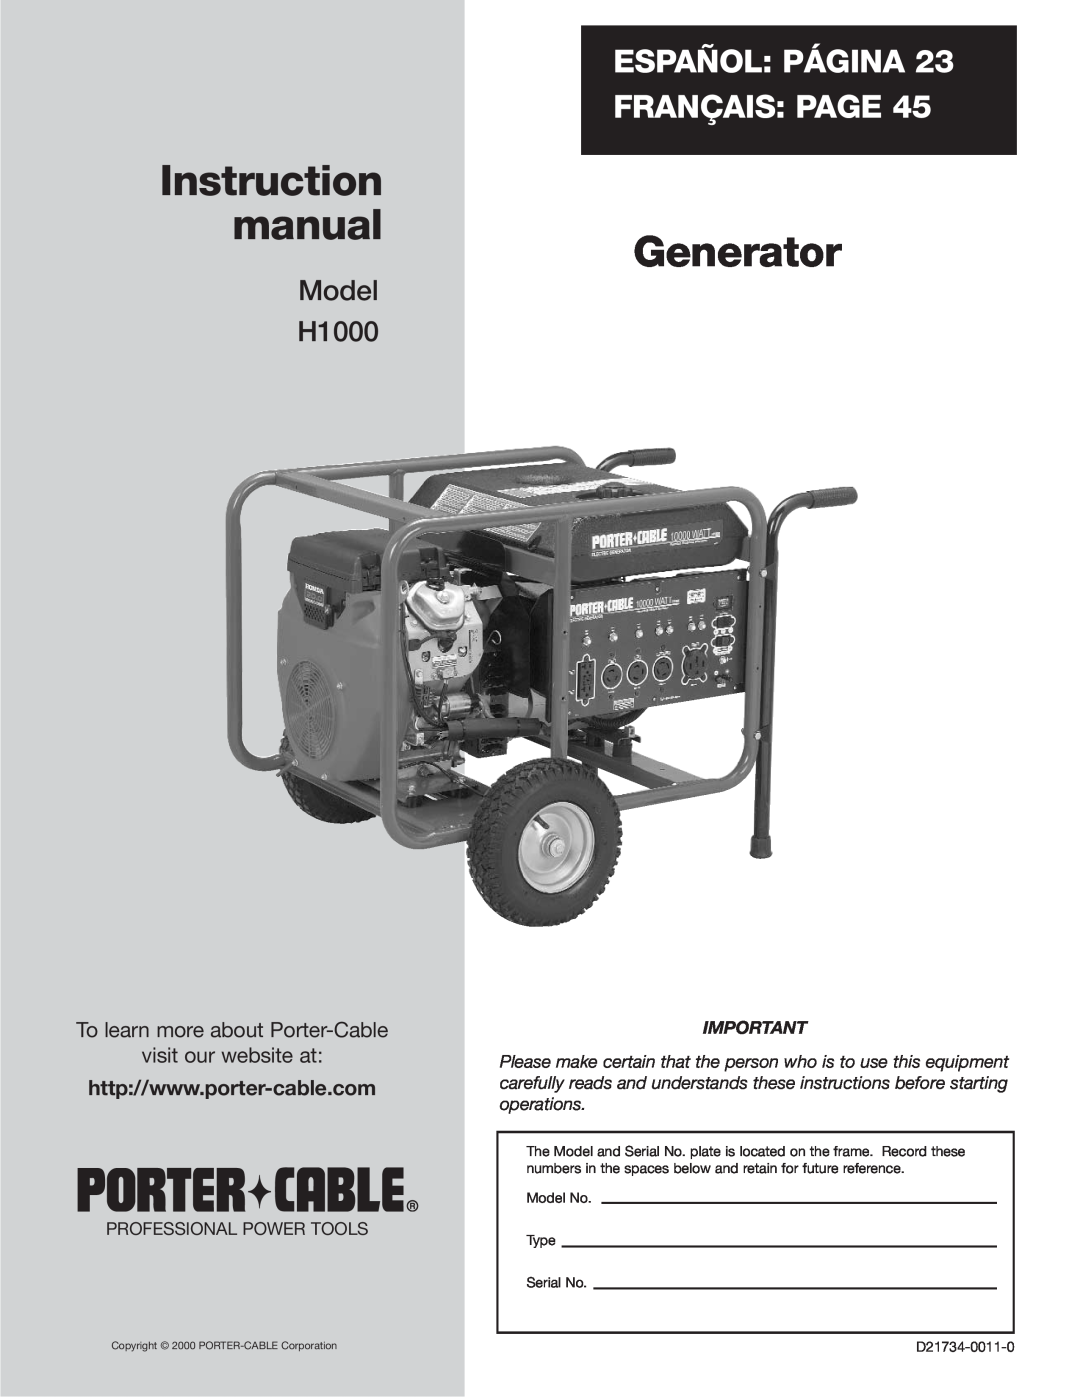 Porter-Cable instruction manual Generator, Español Página Français Page, Model H1000, Model No Type Serial No 